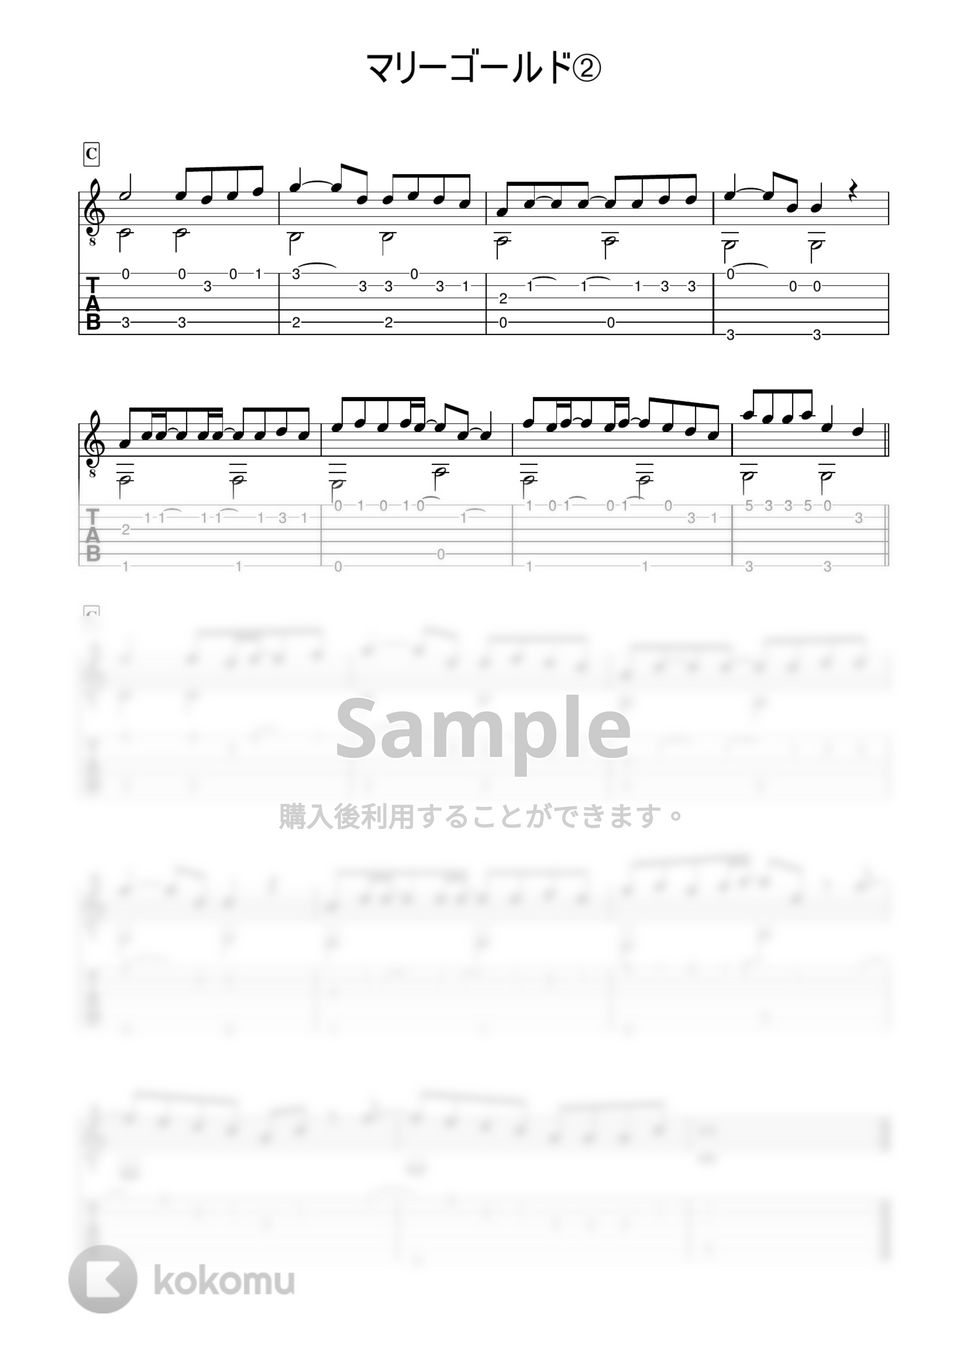 あいみょん - マリーゴールド (かんたんソロギター) by 早乙女浩司